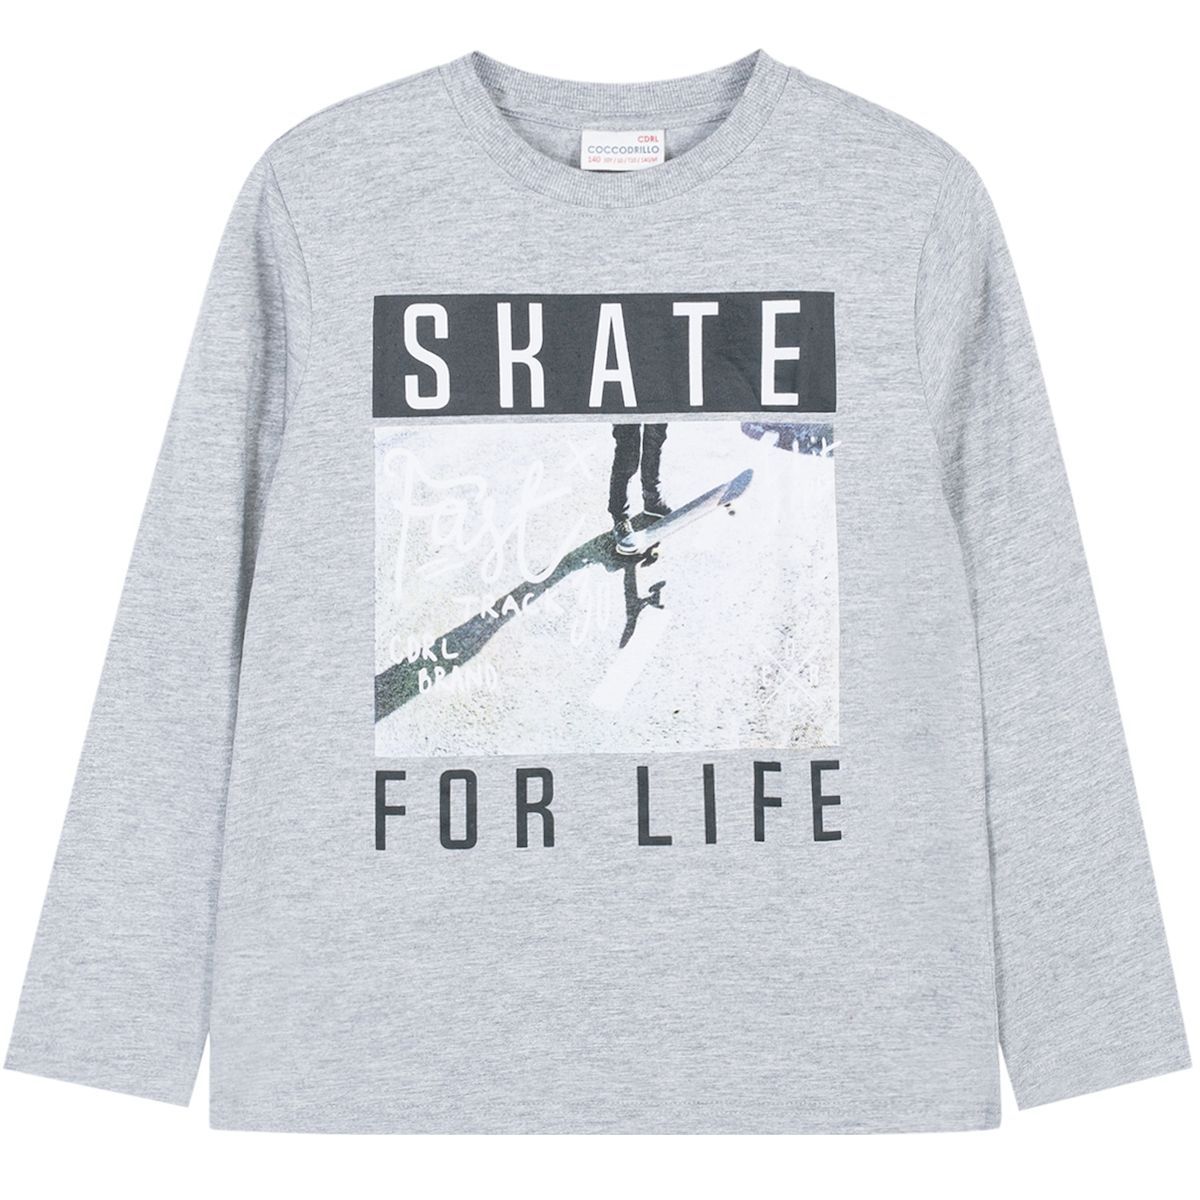    Coccodrillo Skate For Life, : . W191431M2SKA.  158